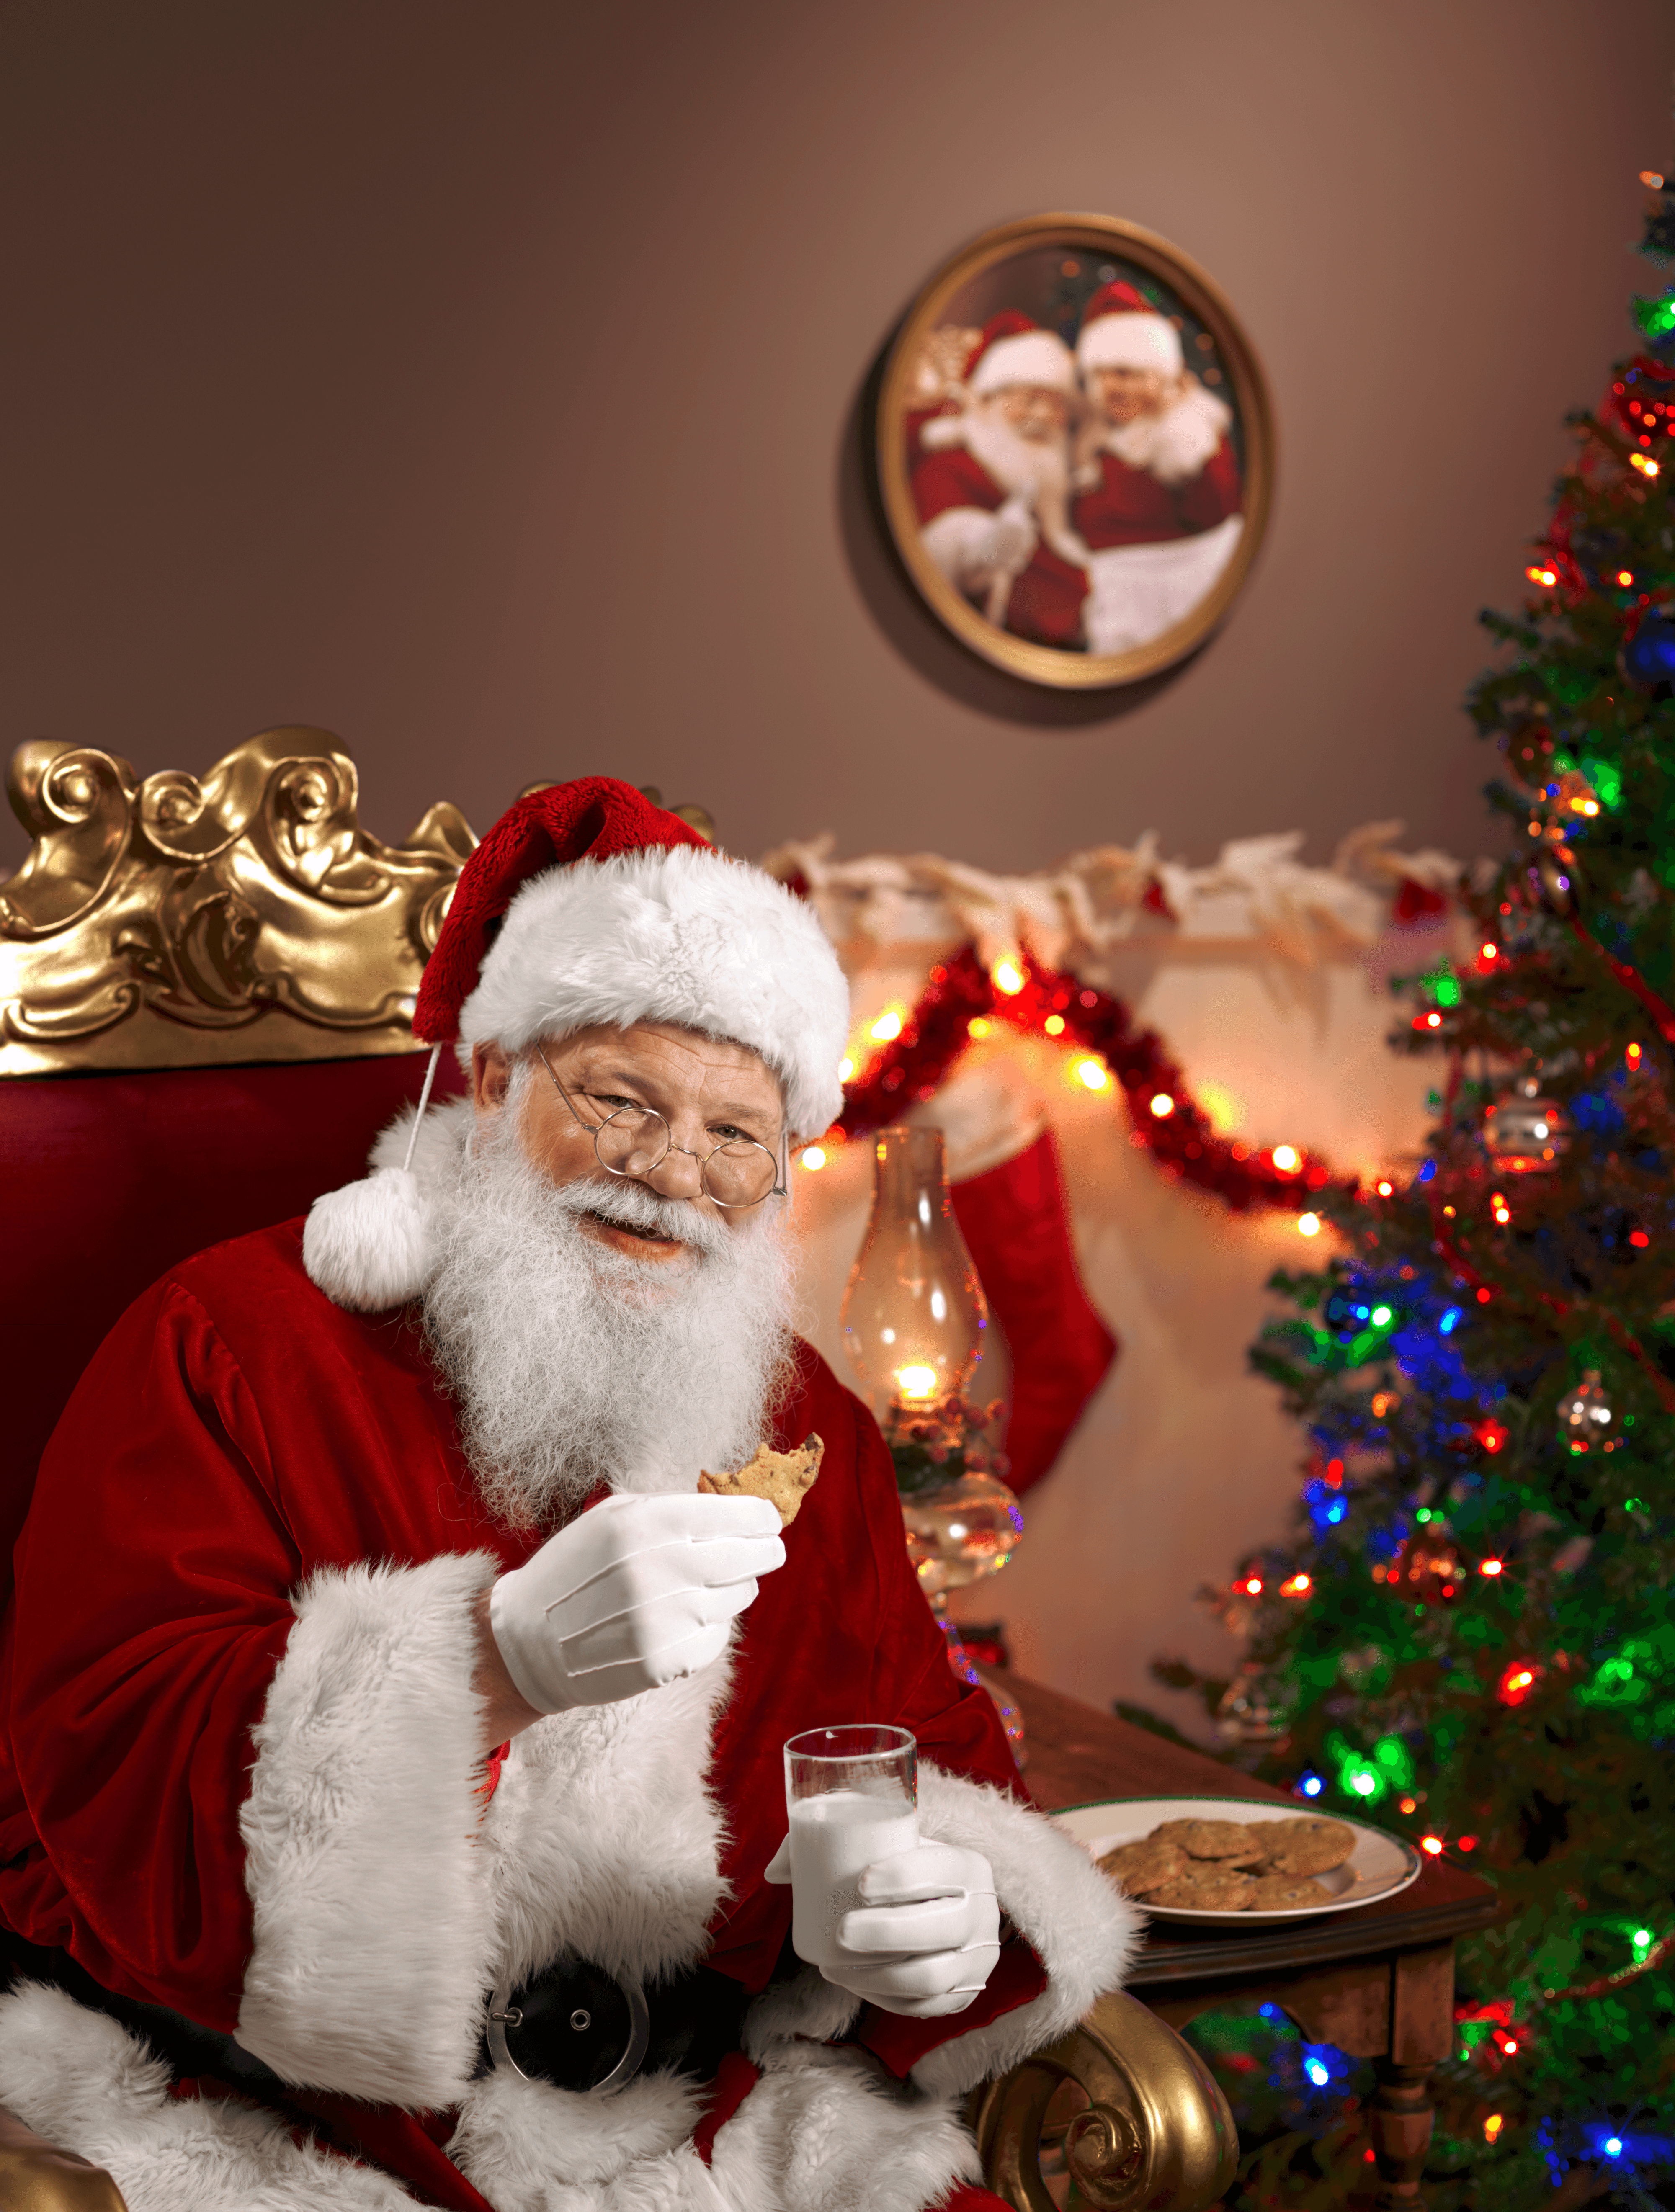 Santa Claus Enjoying a Cookie